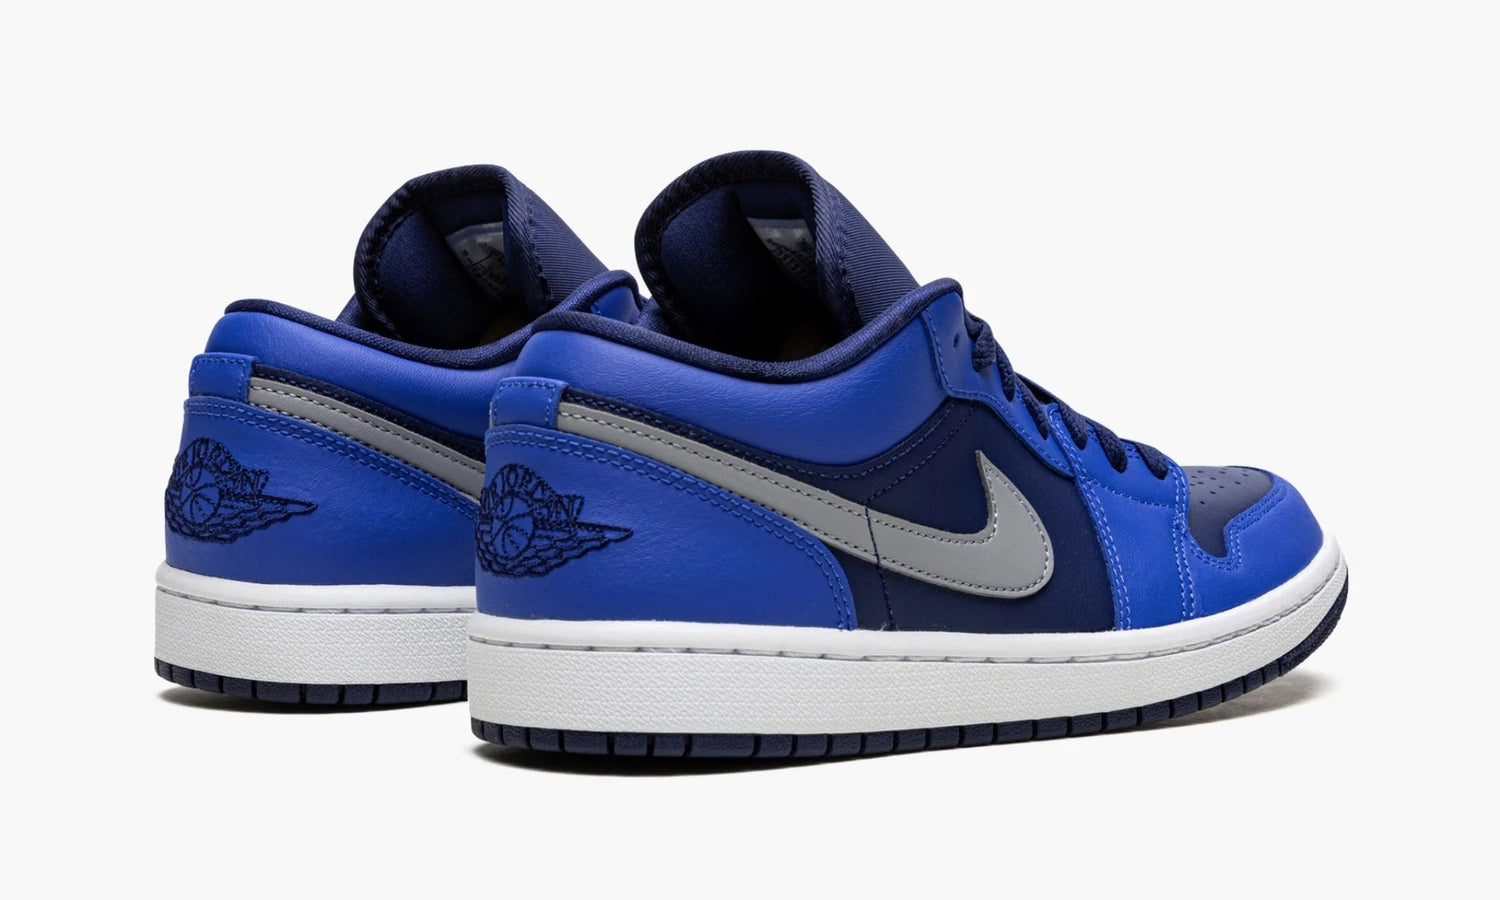 Nike Air Jordan 1 Low WMNS "Game Royal Blue Void" - DC0774 400 | Grailshop